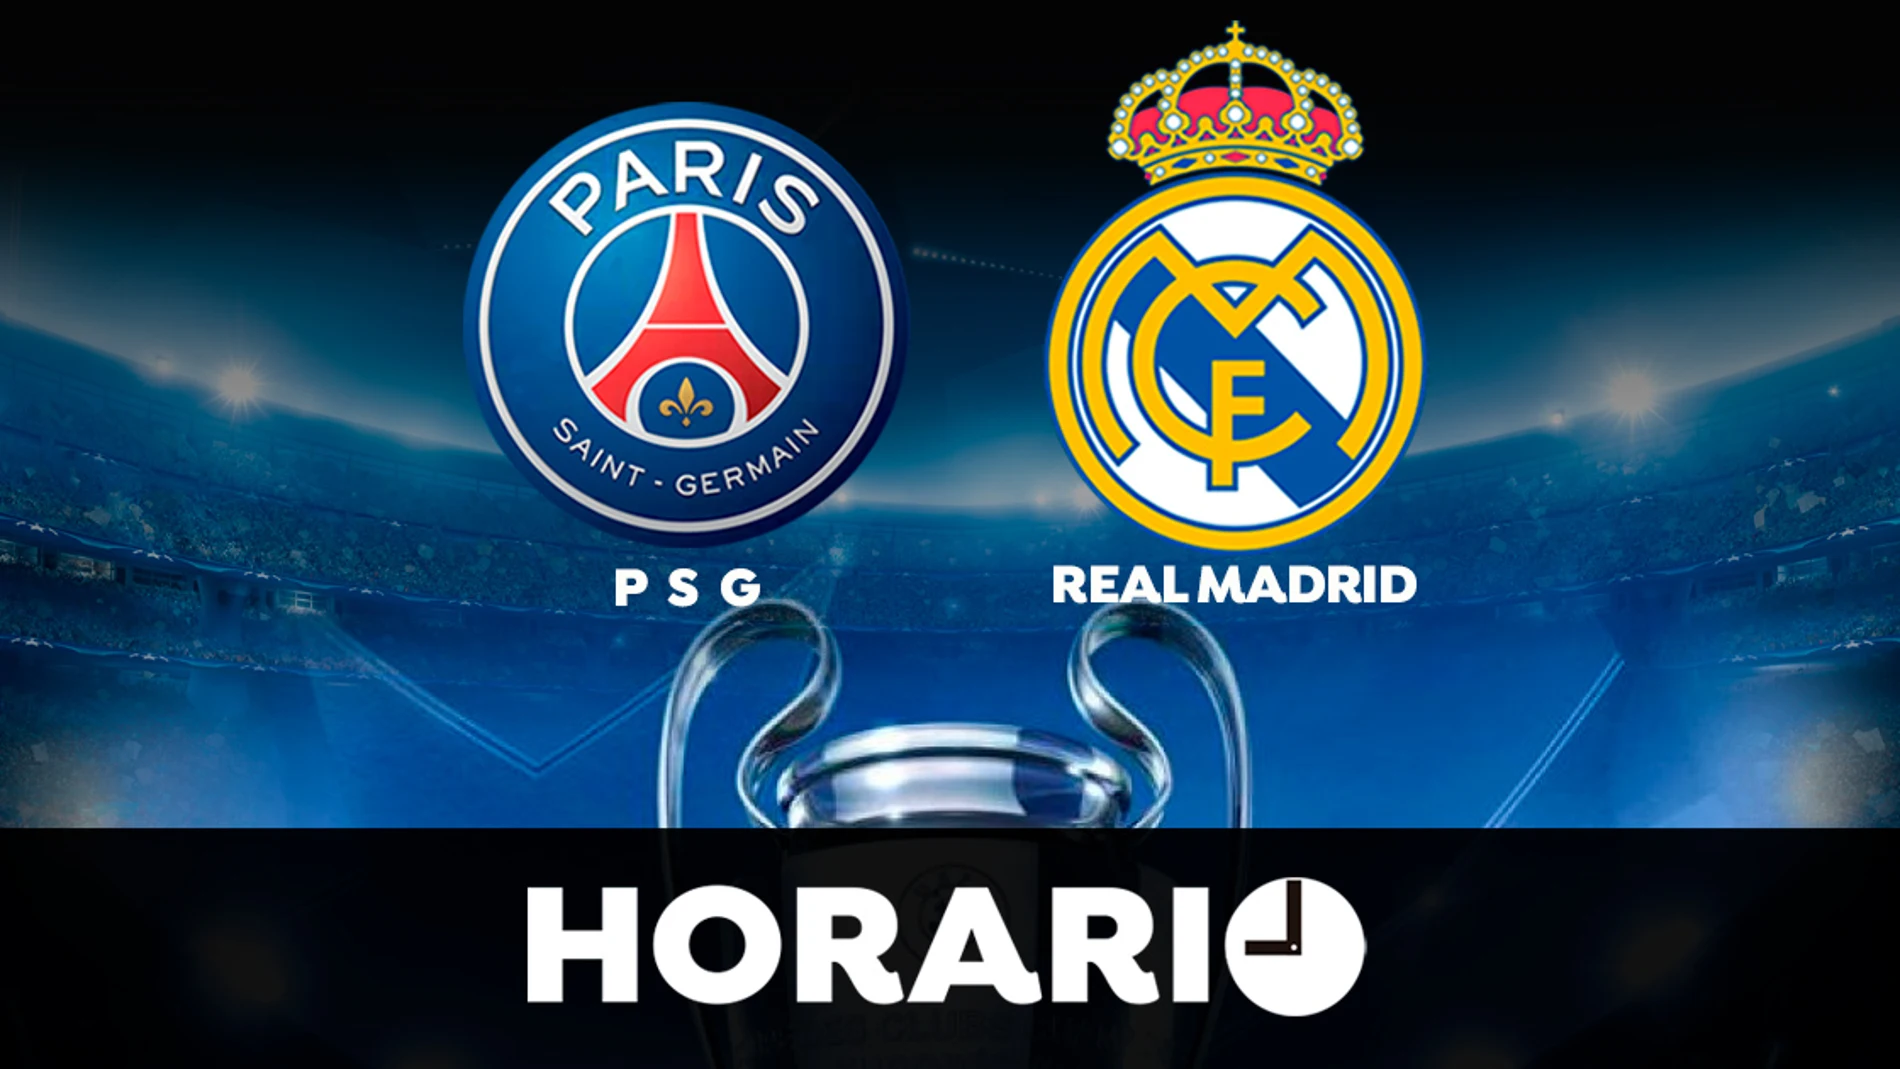 PSG - Real Madrid: Horario y dónde ver el partido de la Champions League en directo